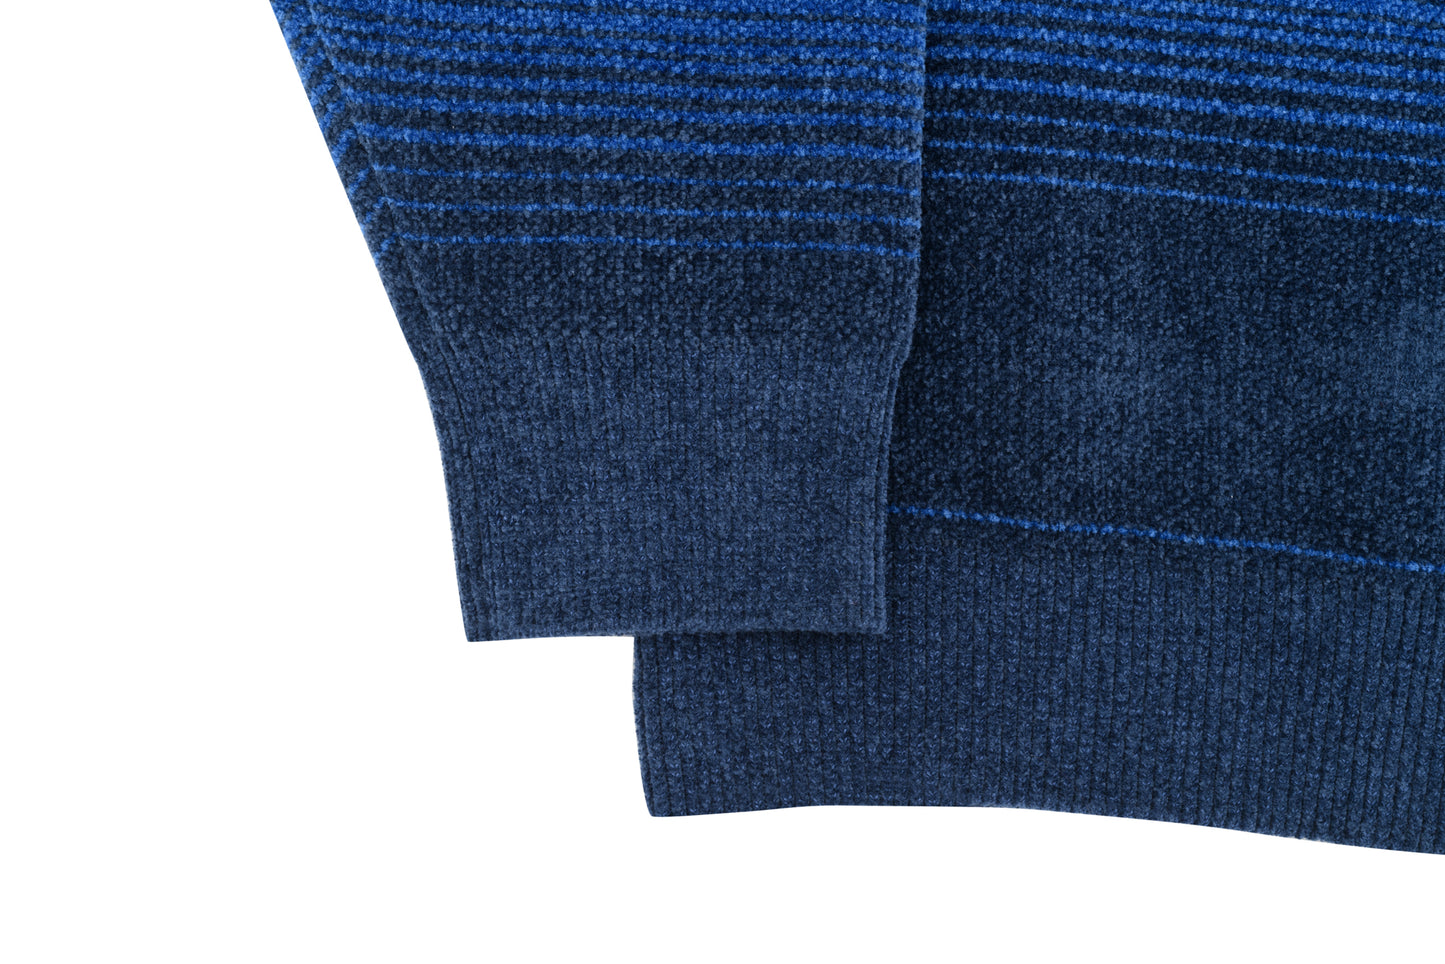 Chenille Ripple Knit (Navy/Blue)